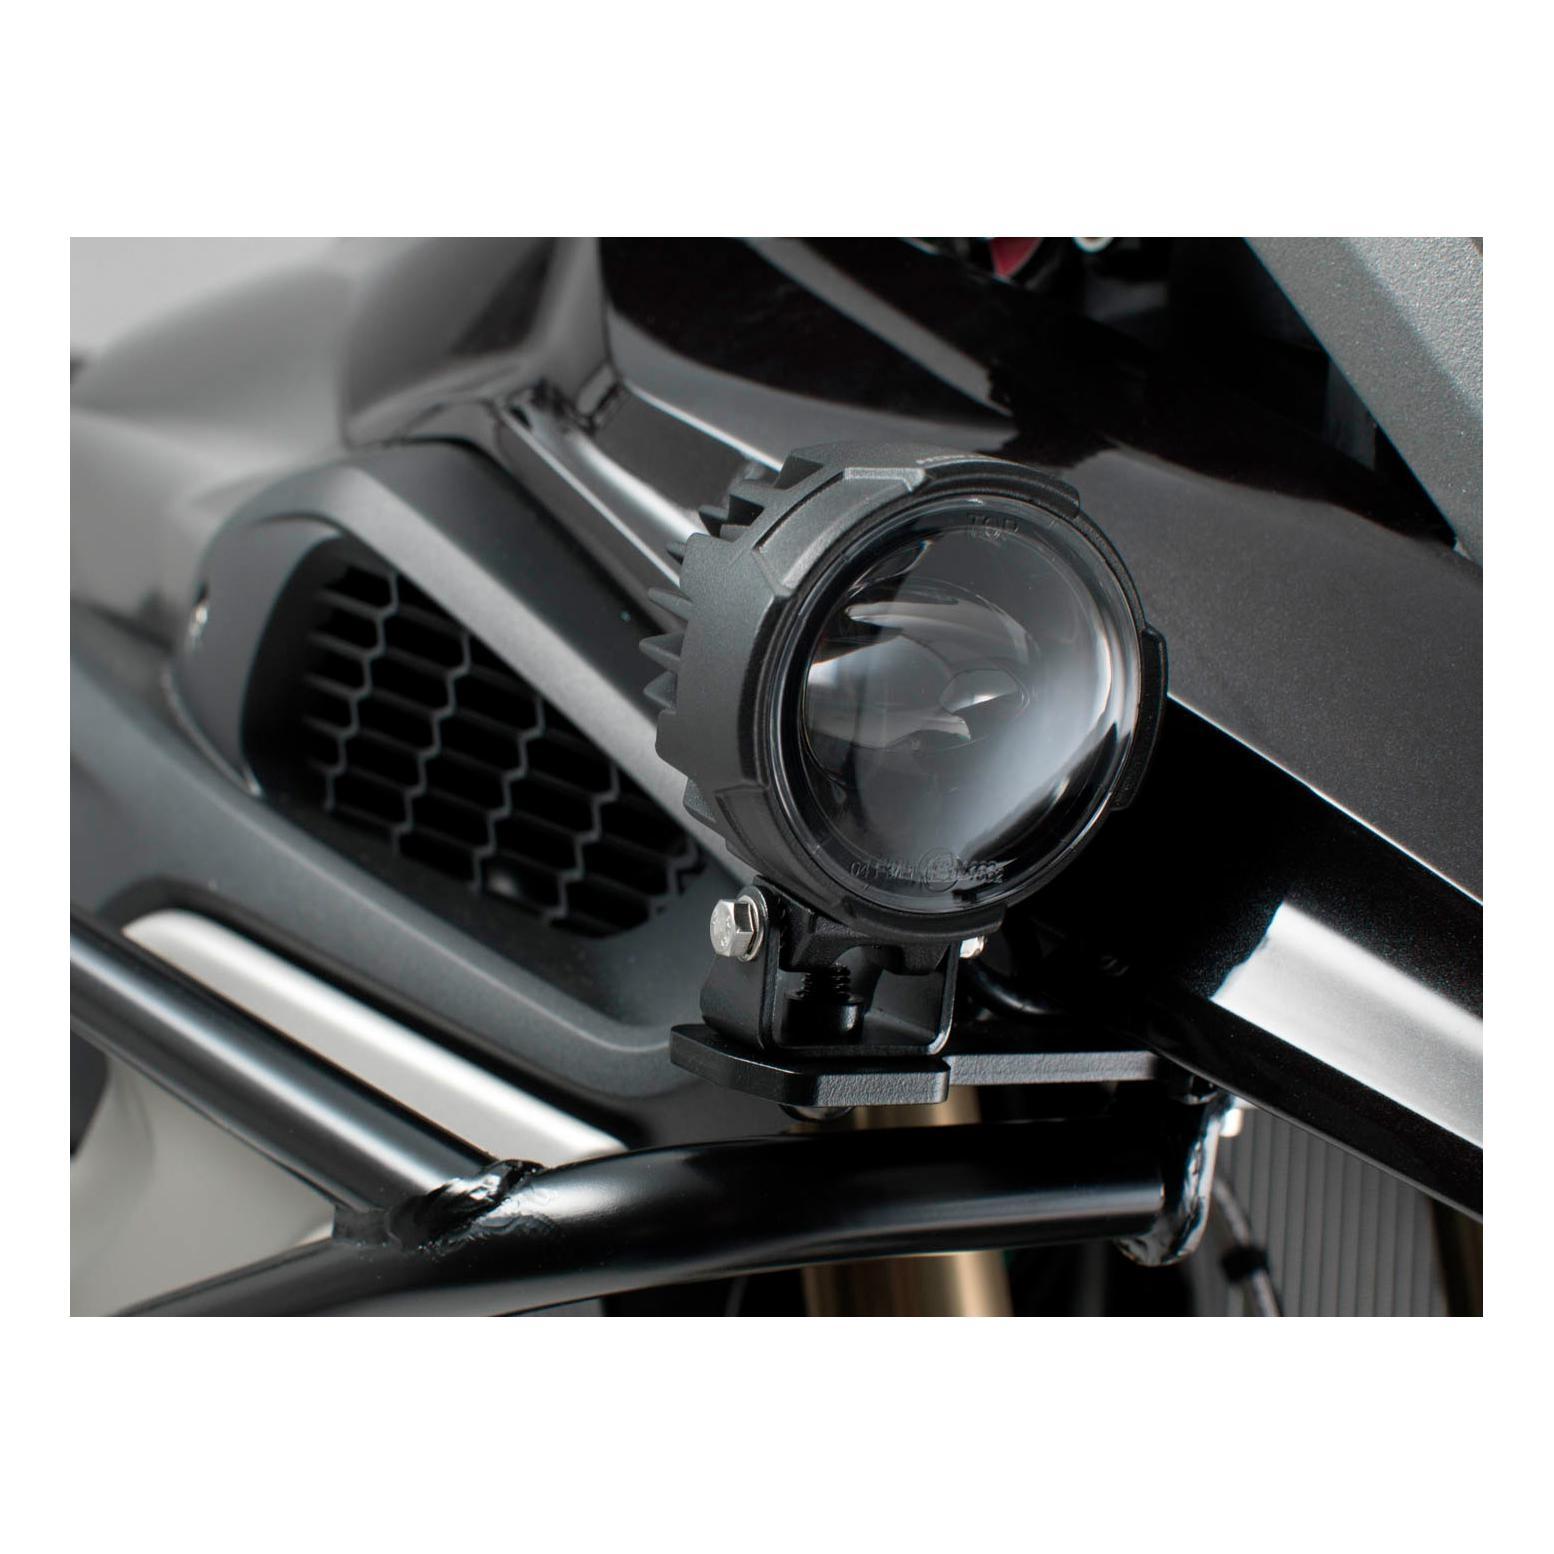 Kit de fixation BMW R1200GS et R1250GS pour feux LED supplémentaires.